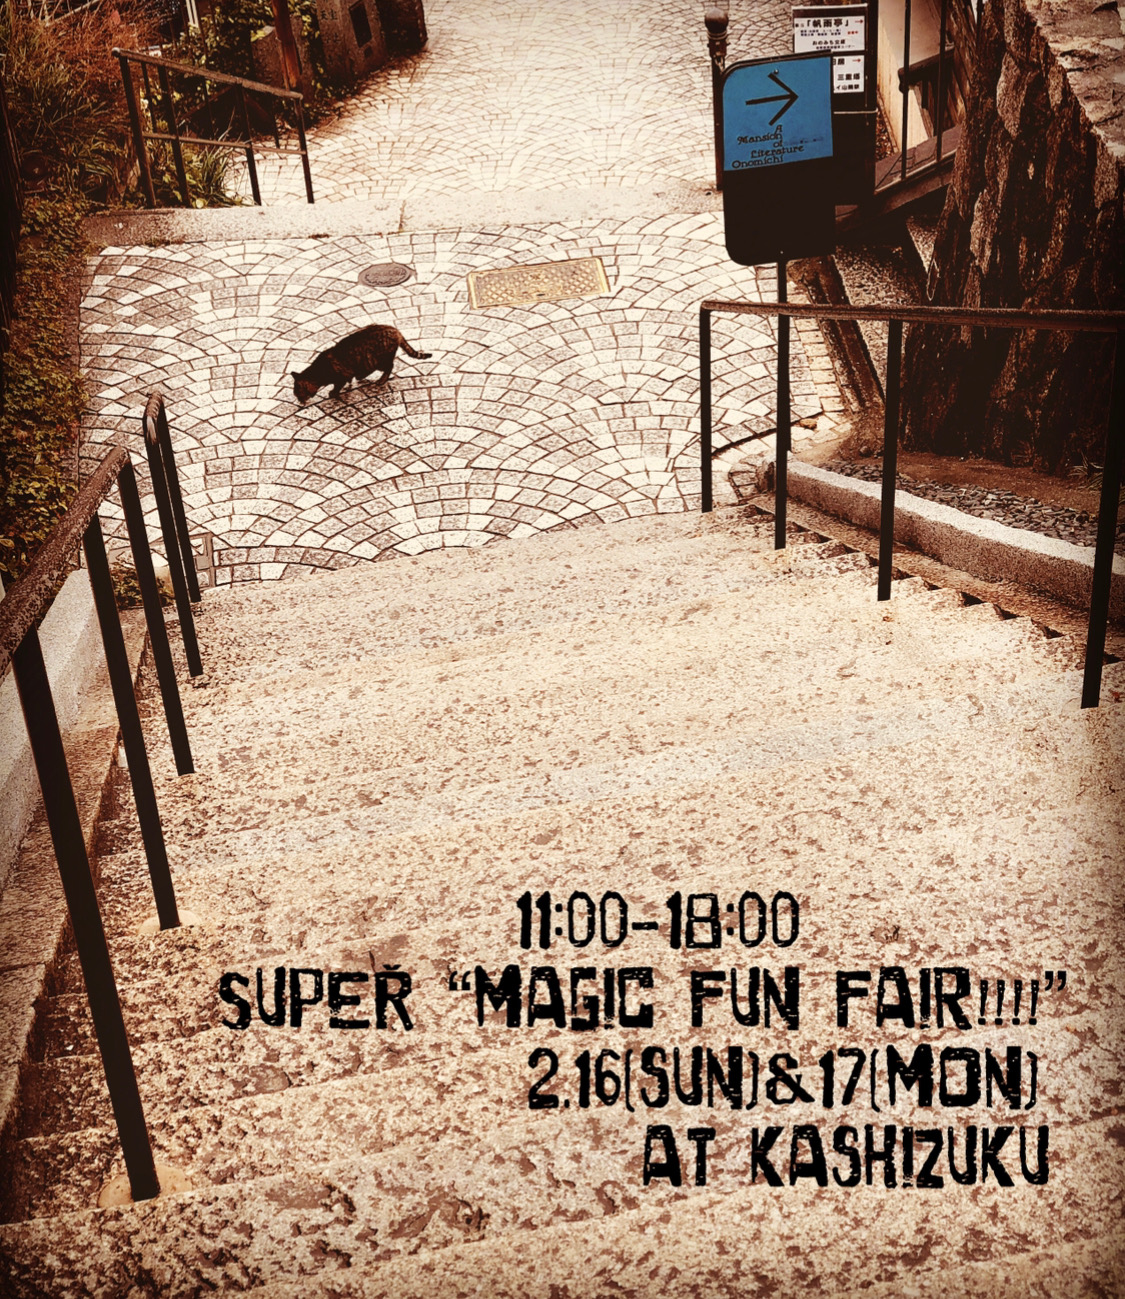 SUPER "magic fun fair!!!!" VOL.10